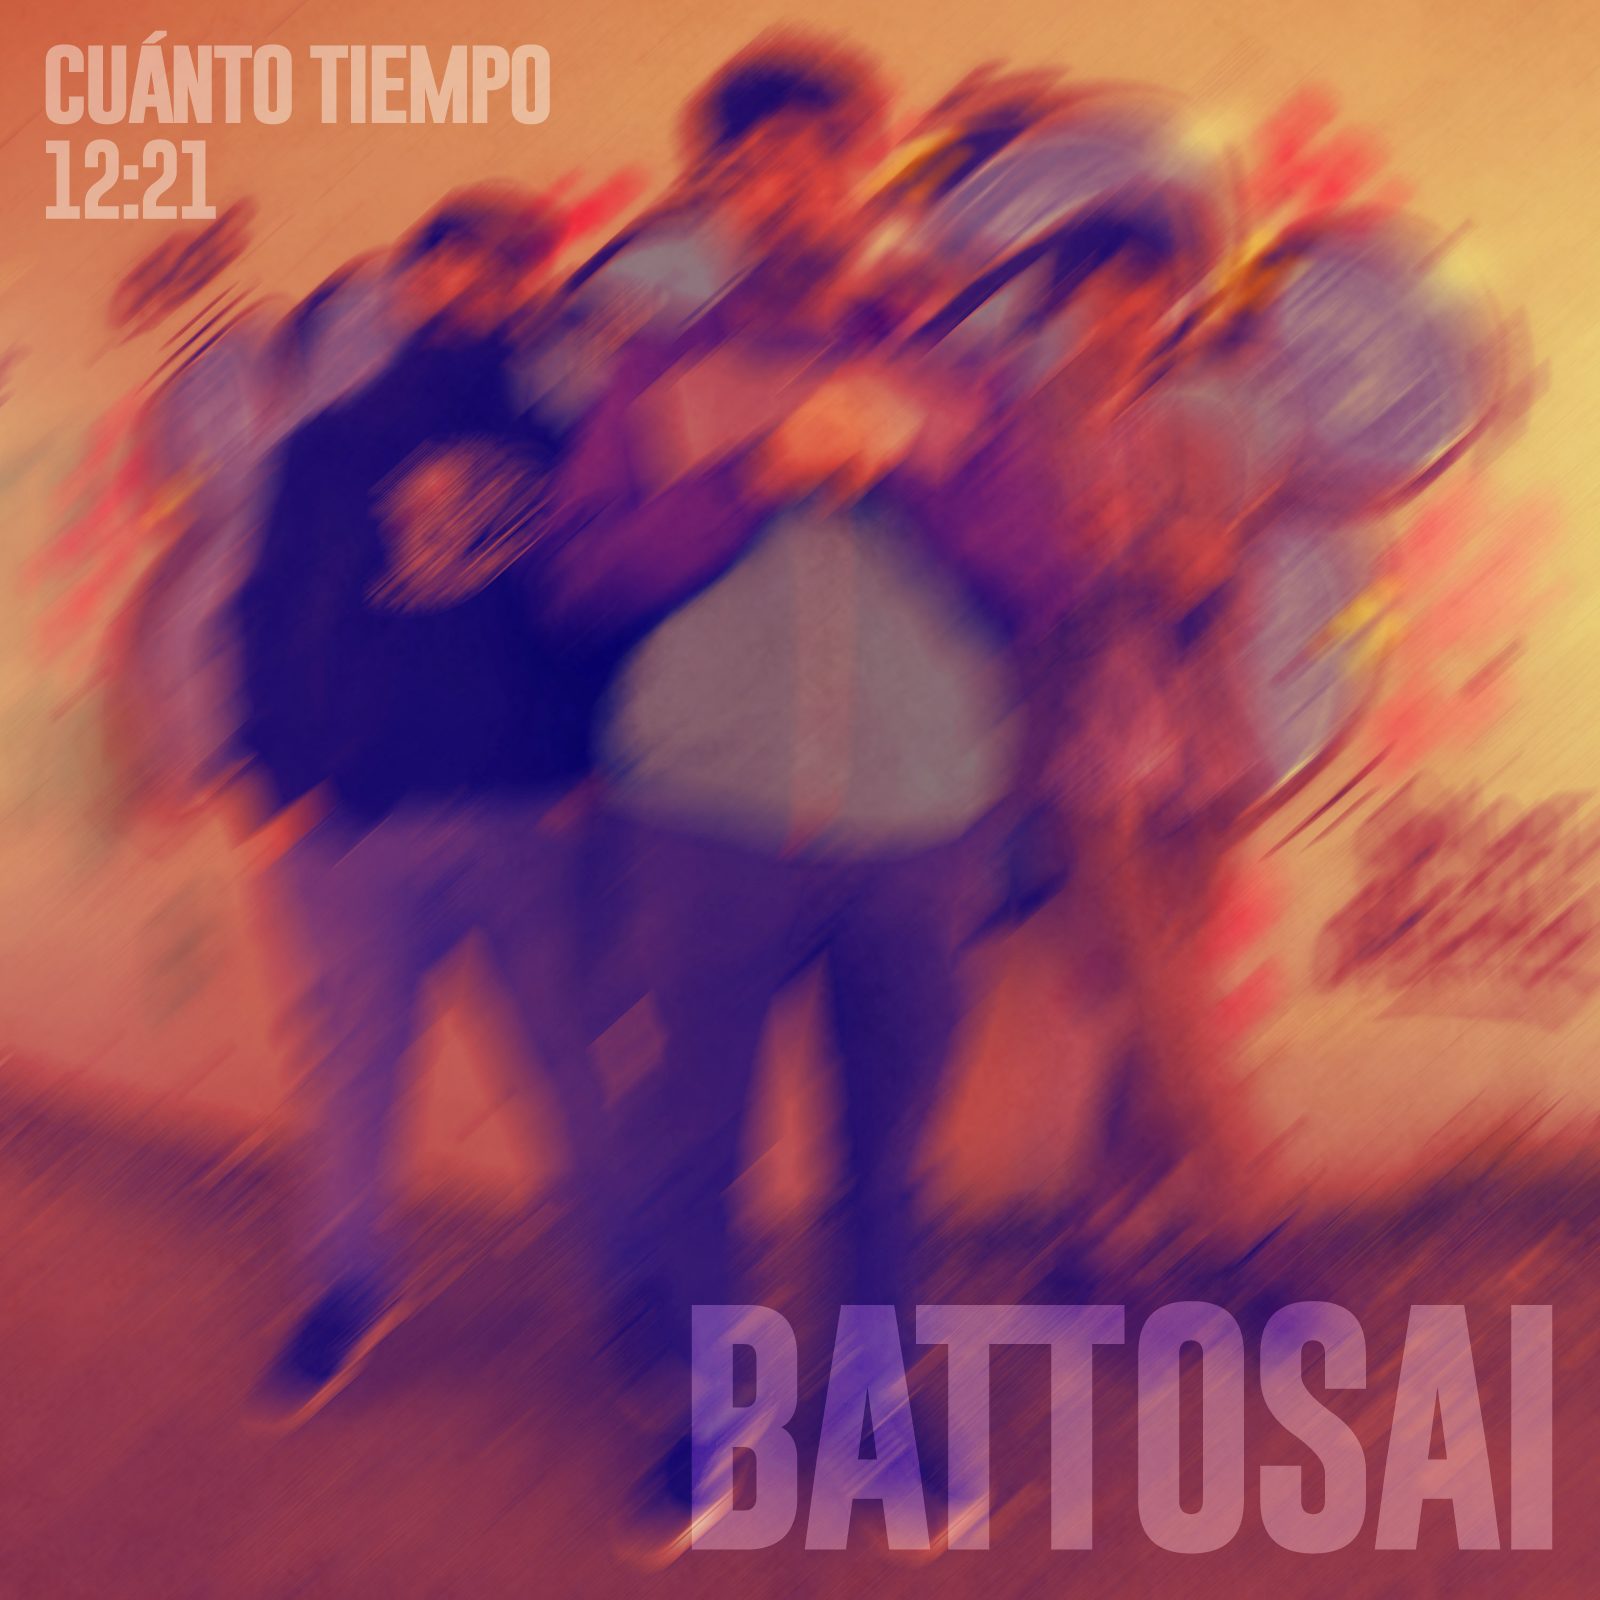 Los gallegos Battosai fichan por Spinda Records